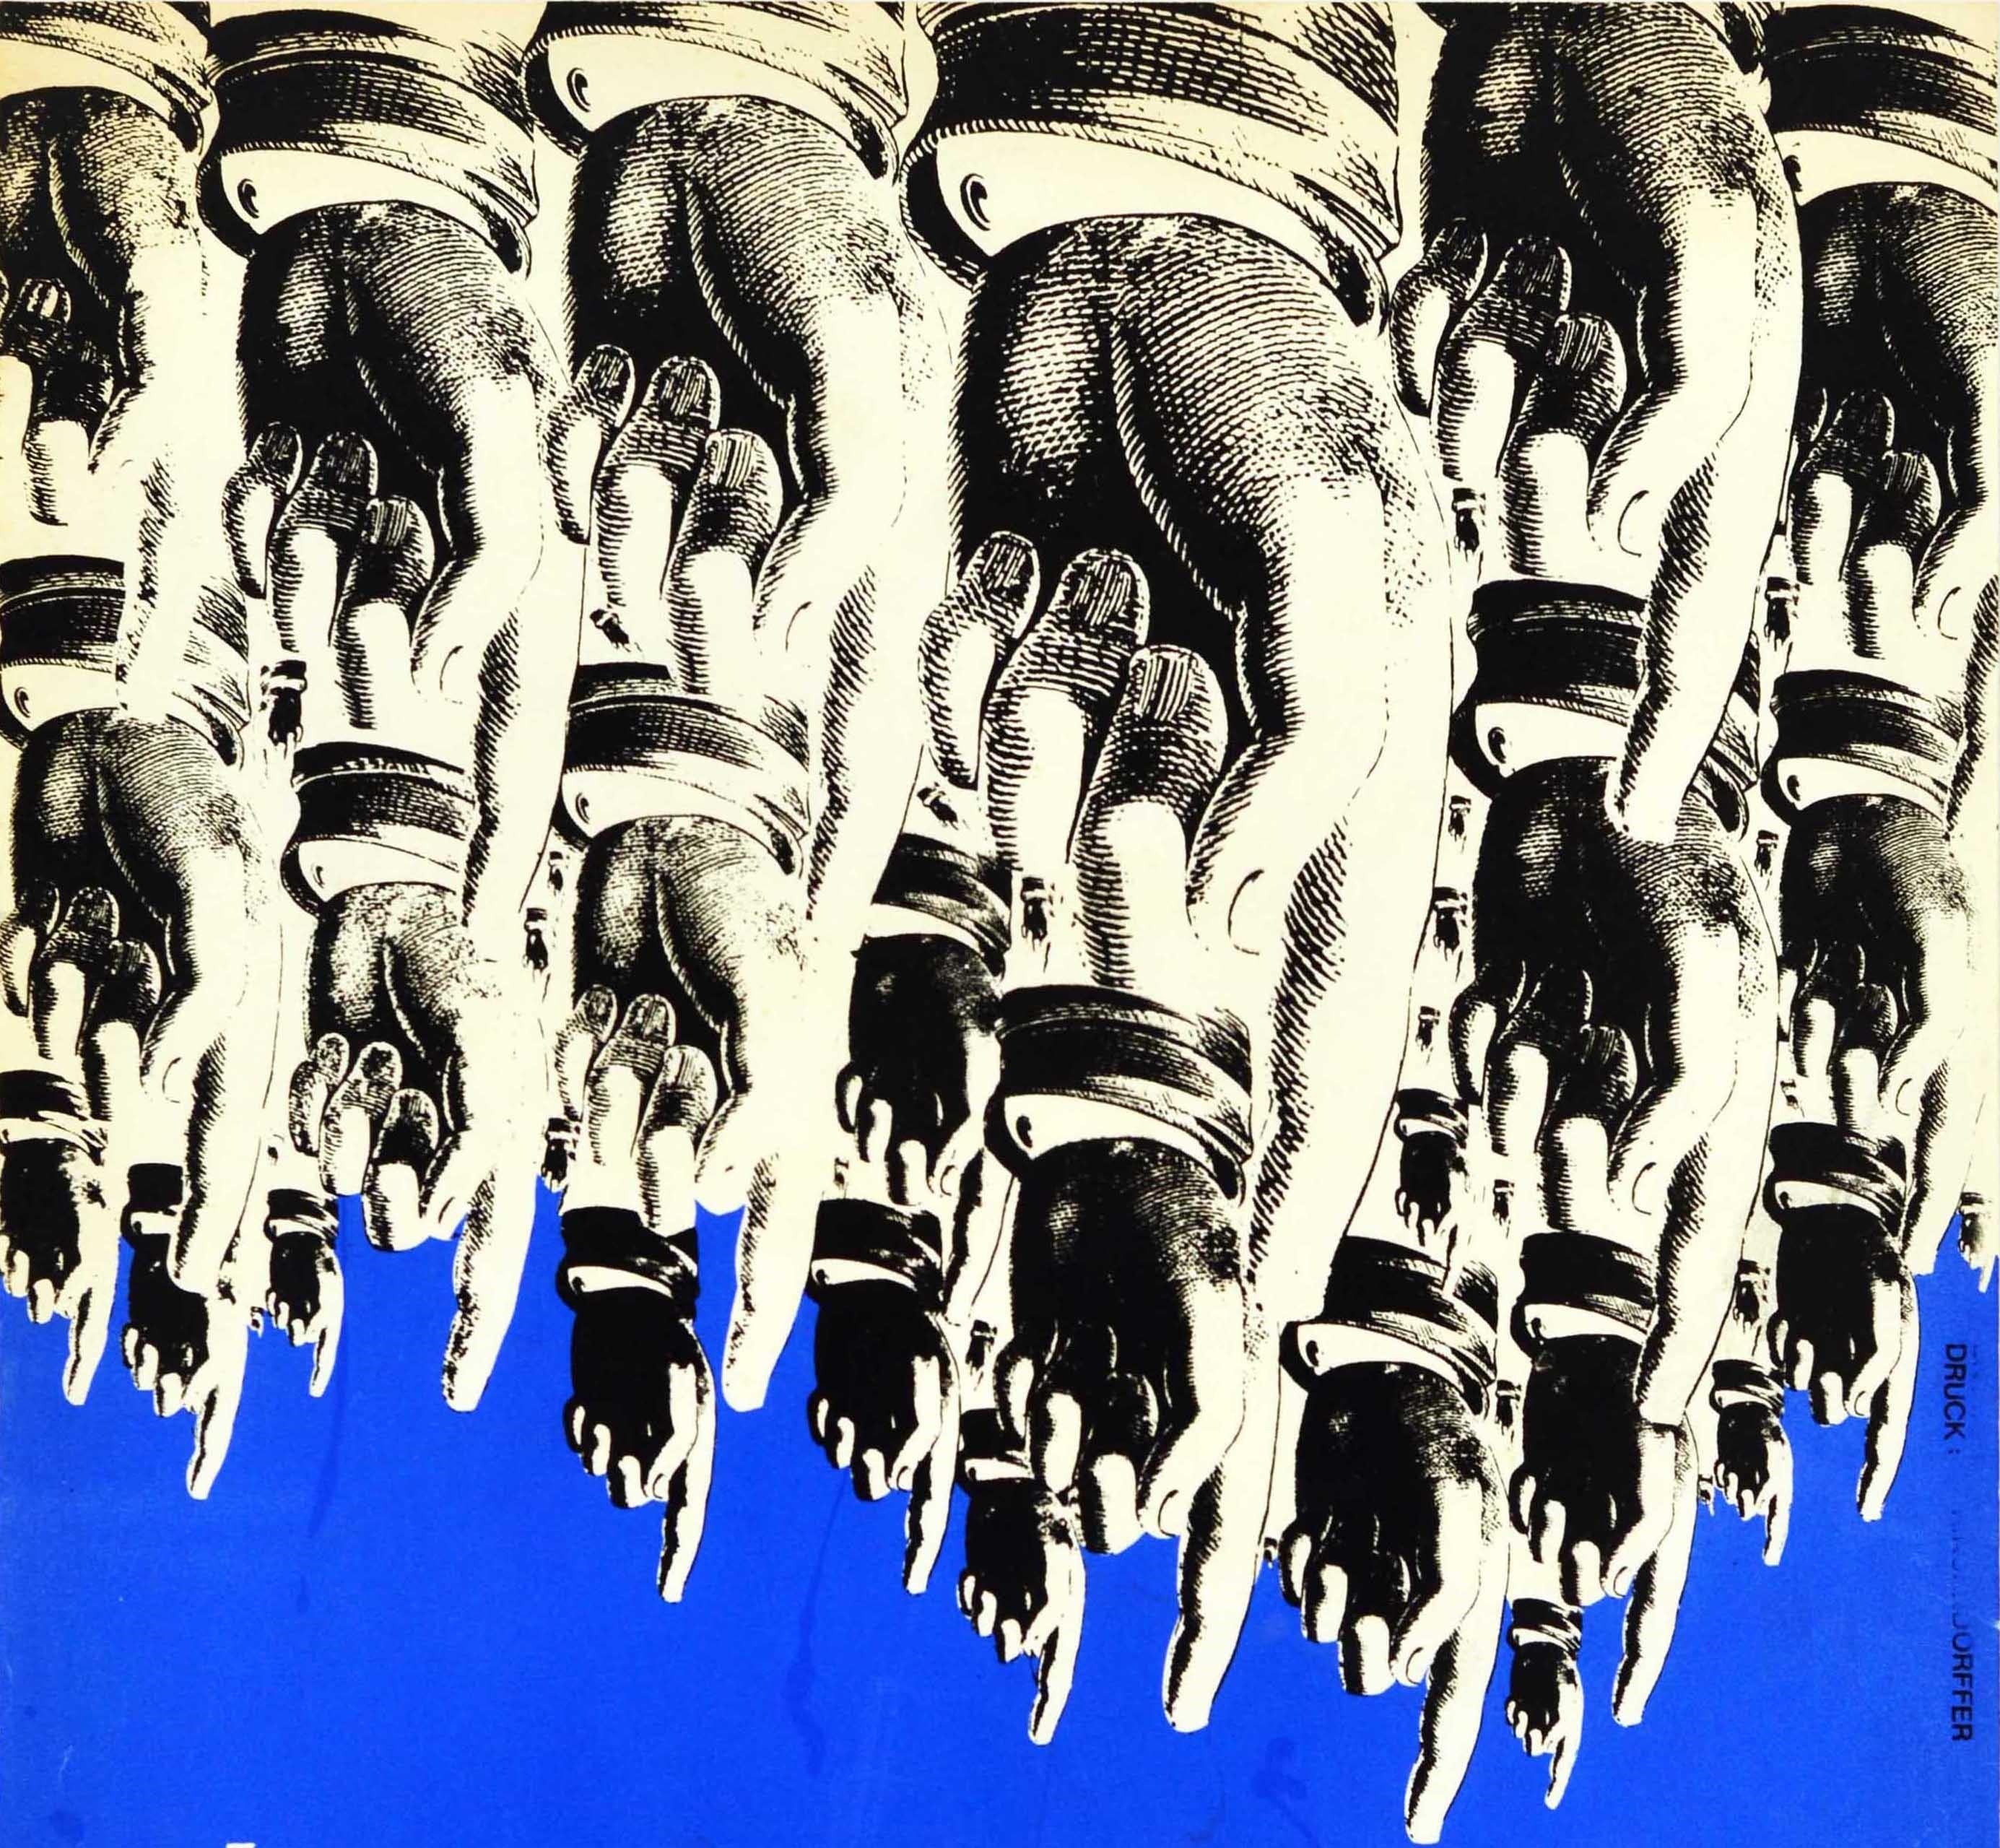 Original-Werbeplakat für Bix's Swinghouse im South Border Jazz Club in Bad Honnef am Samstag, den 17. Dezember. Das Plakat zeigt eine Collage aus schwarzen und weißen Händen, die mit dem Finger auf den Titel in der Mitte zeigen, auf blauem